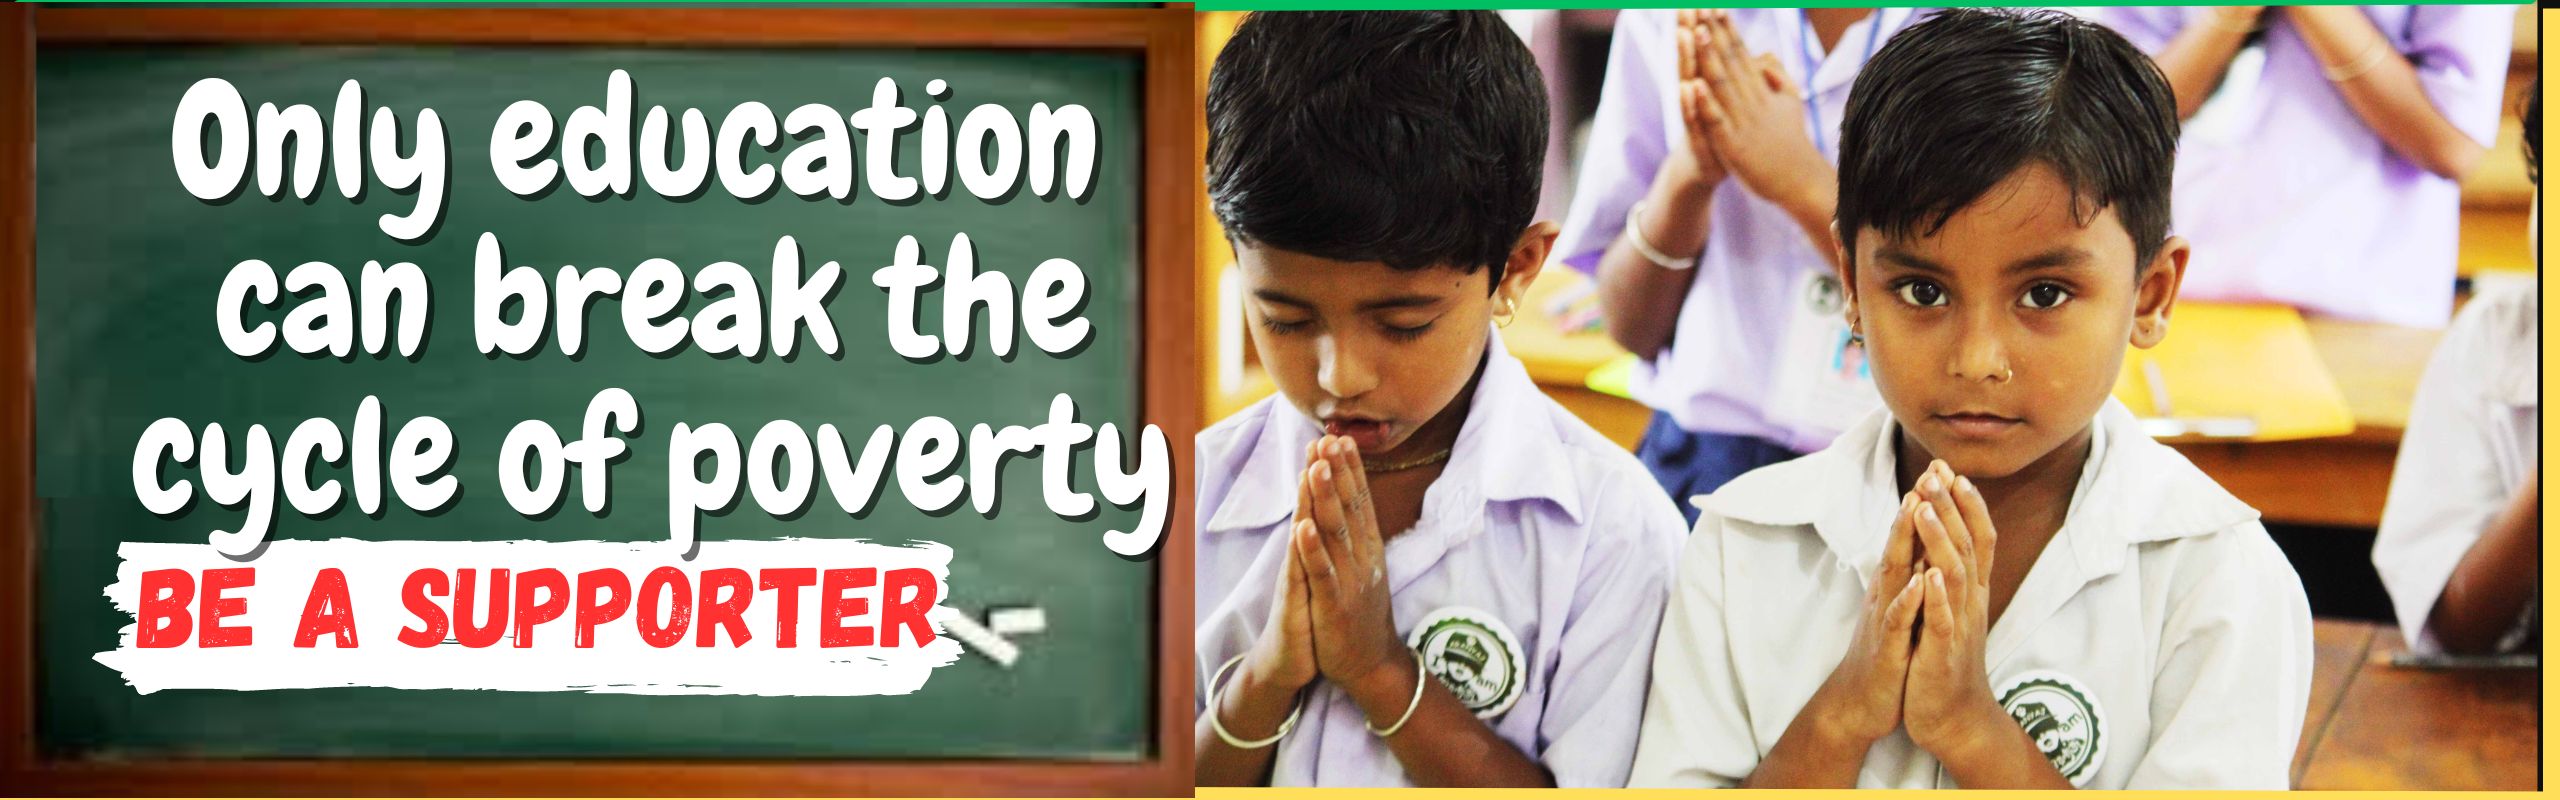 education for needy children